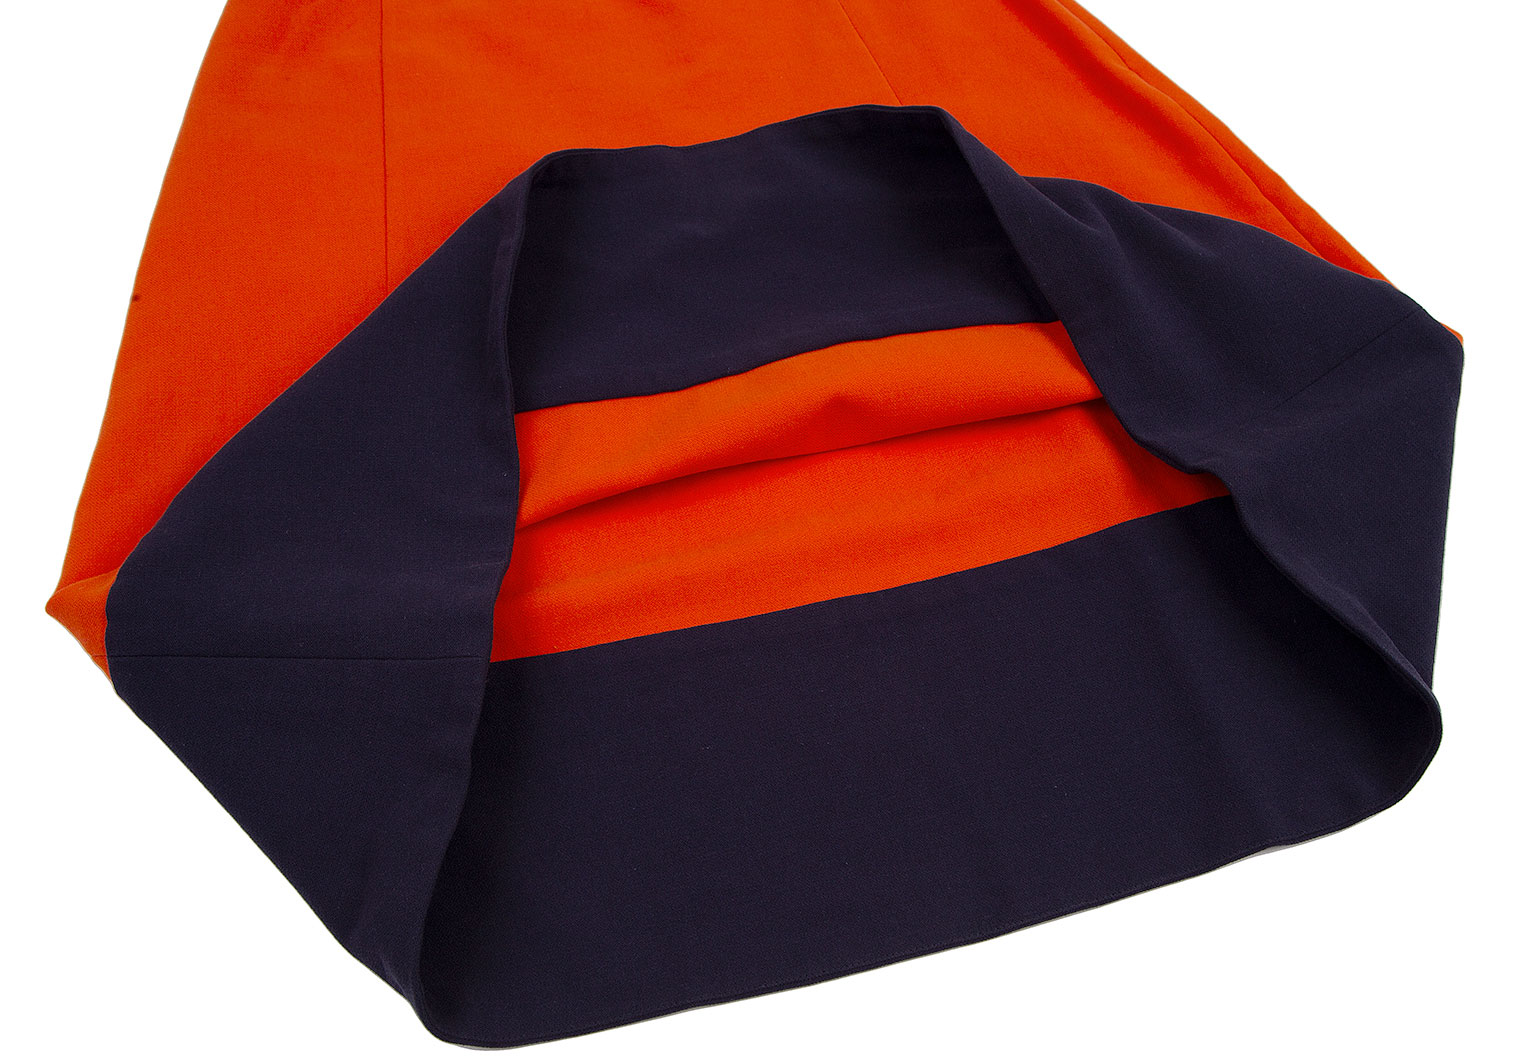 マルニMARNI バイカラー切替台形スカート オレンジ紺40